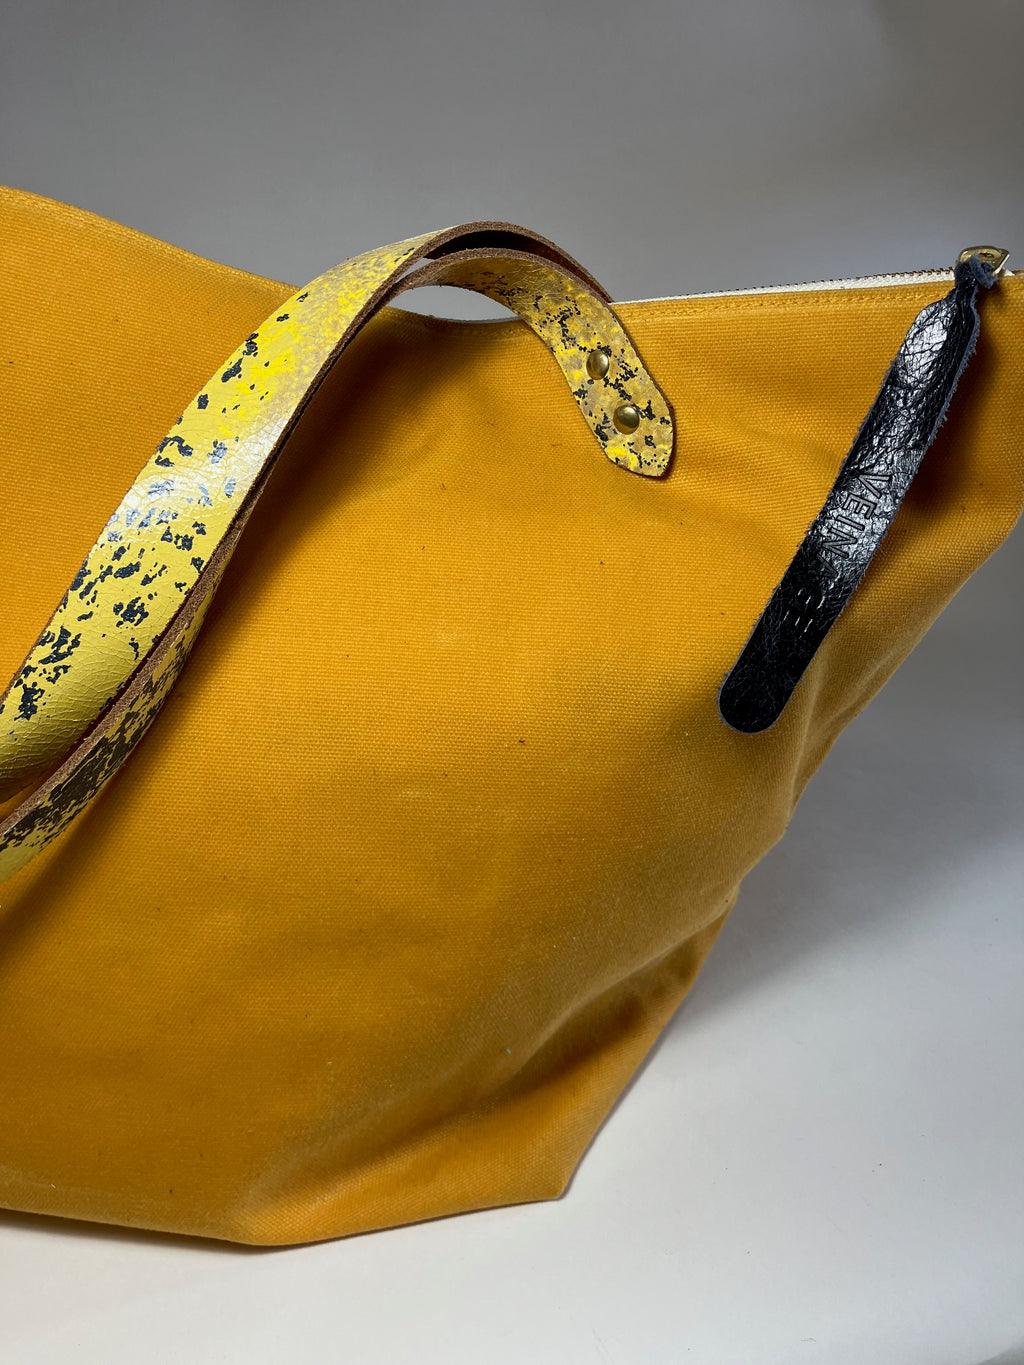 Sac de voyage en coton ciré jaune moutarde et cuir modèle FRONTENAC Échantillon, pièce unique